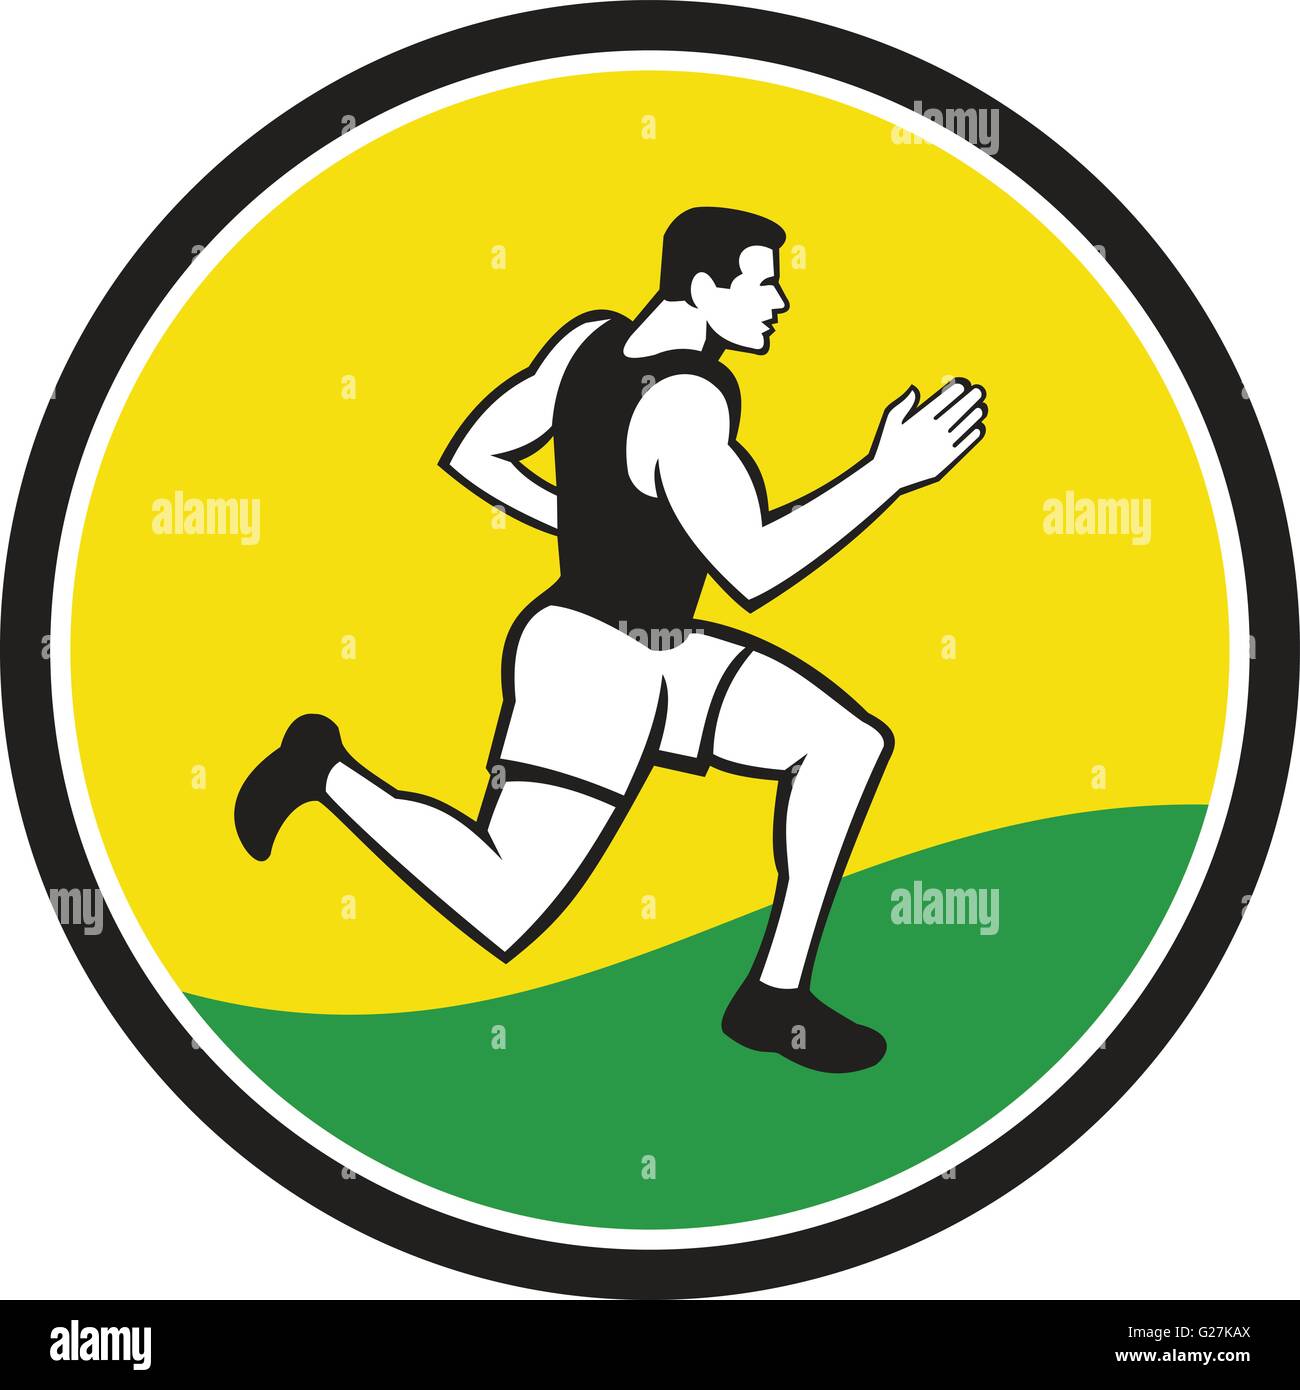 Illustrationen von männlichen Marathonläufer Triathletin läuft von der Seite gesehen legen im inneren Kreis auf isolierte Hintergrund getan im retro-Stil. Stock Vektor